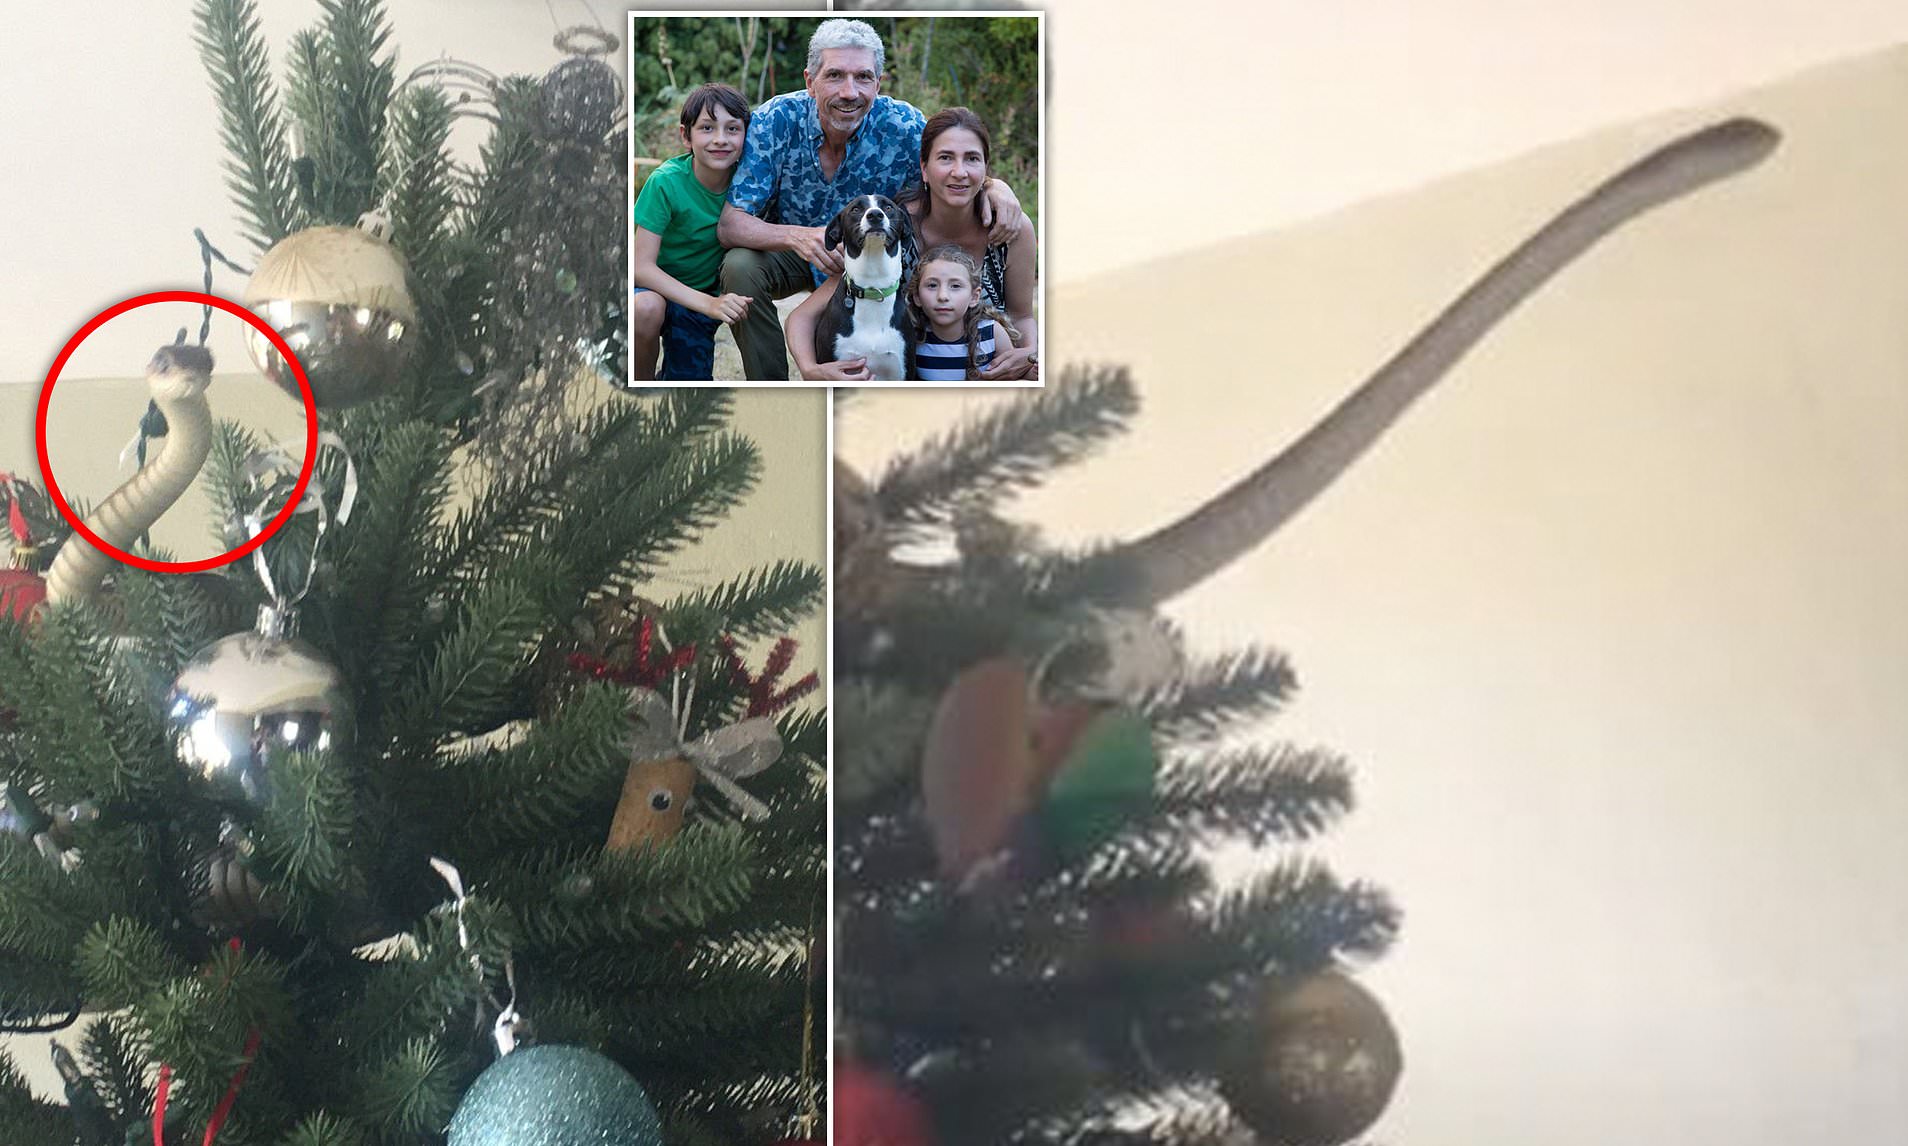 شاهد : عائلة بريطانية تشتري "شجرة الكريسماس" وبعد تزيينها كانت المفاجأة !